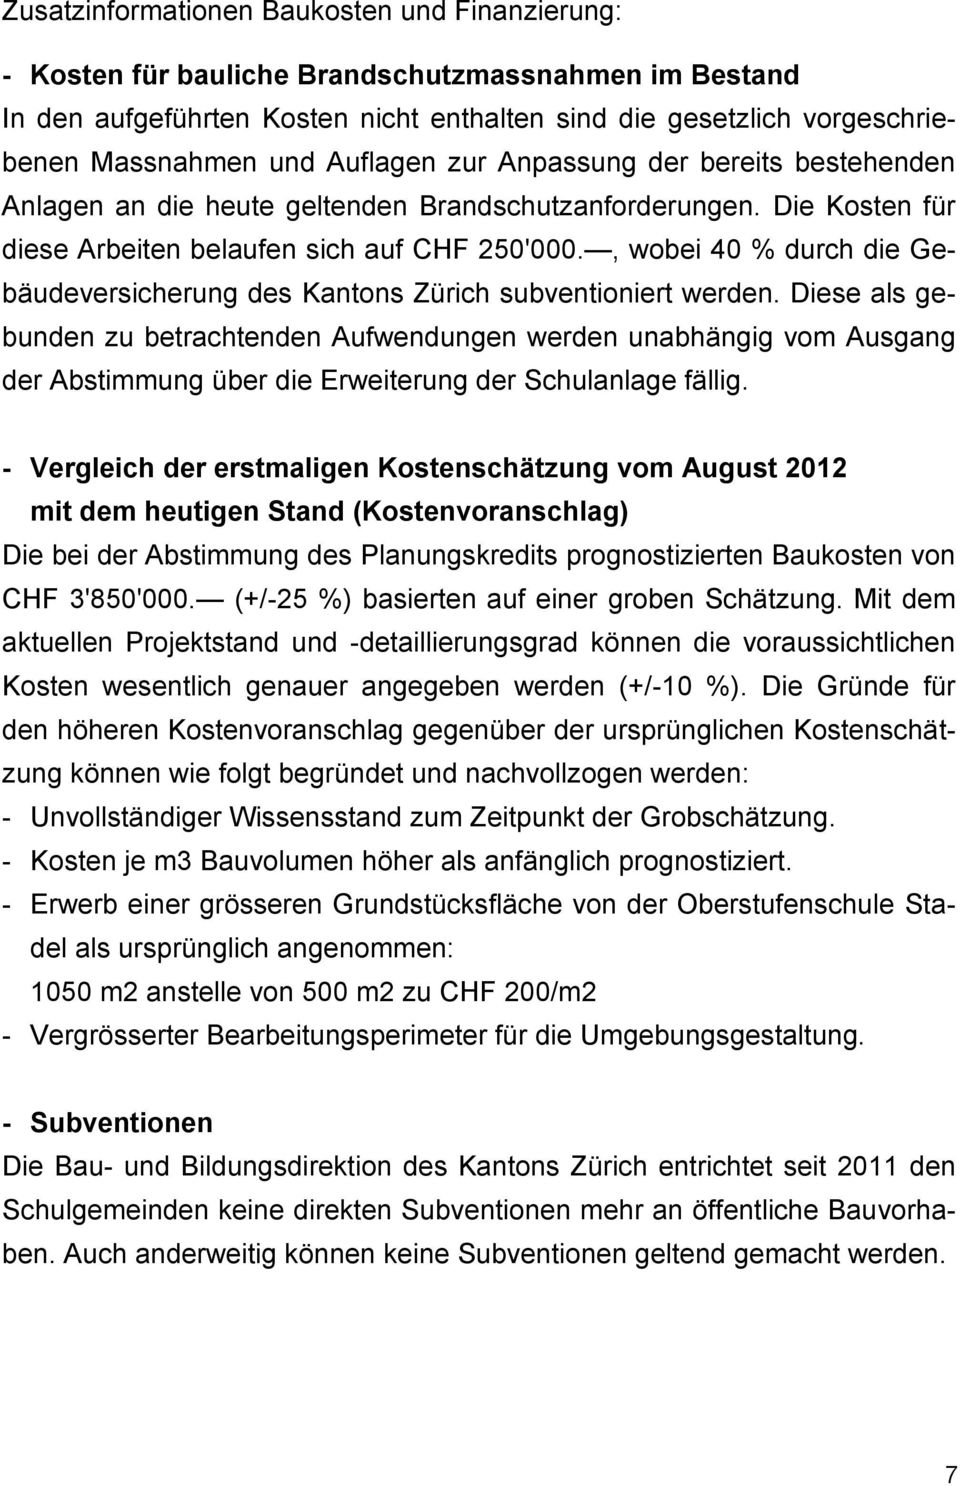 , wobei 40 % durch die Gebäudeversicherung des Kantons Zürich subventioniert werden.